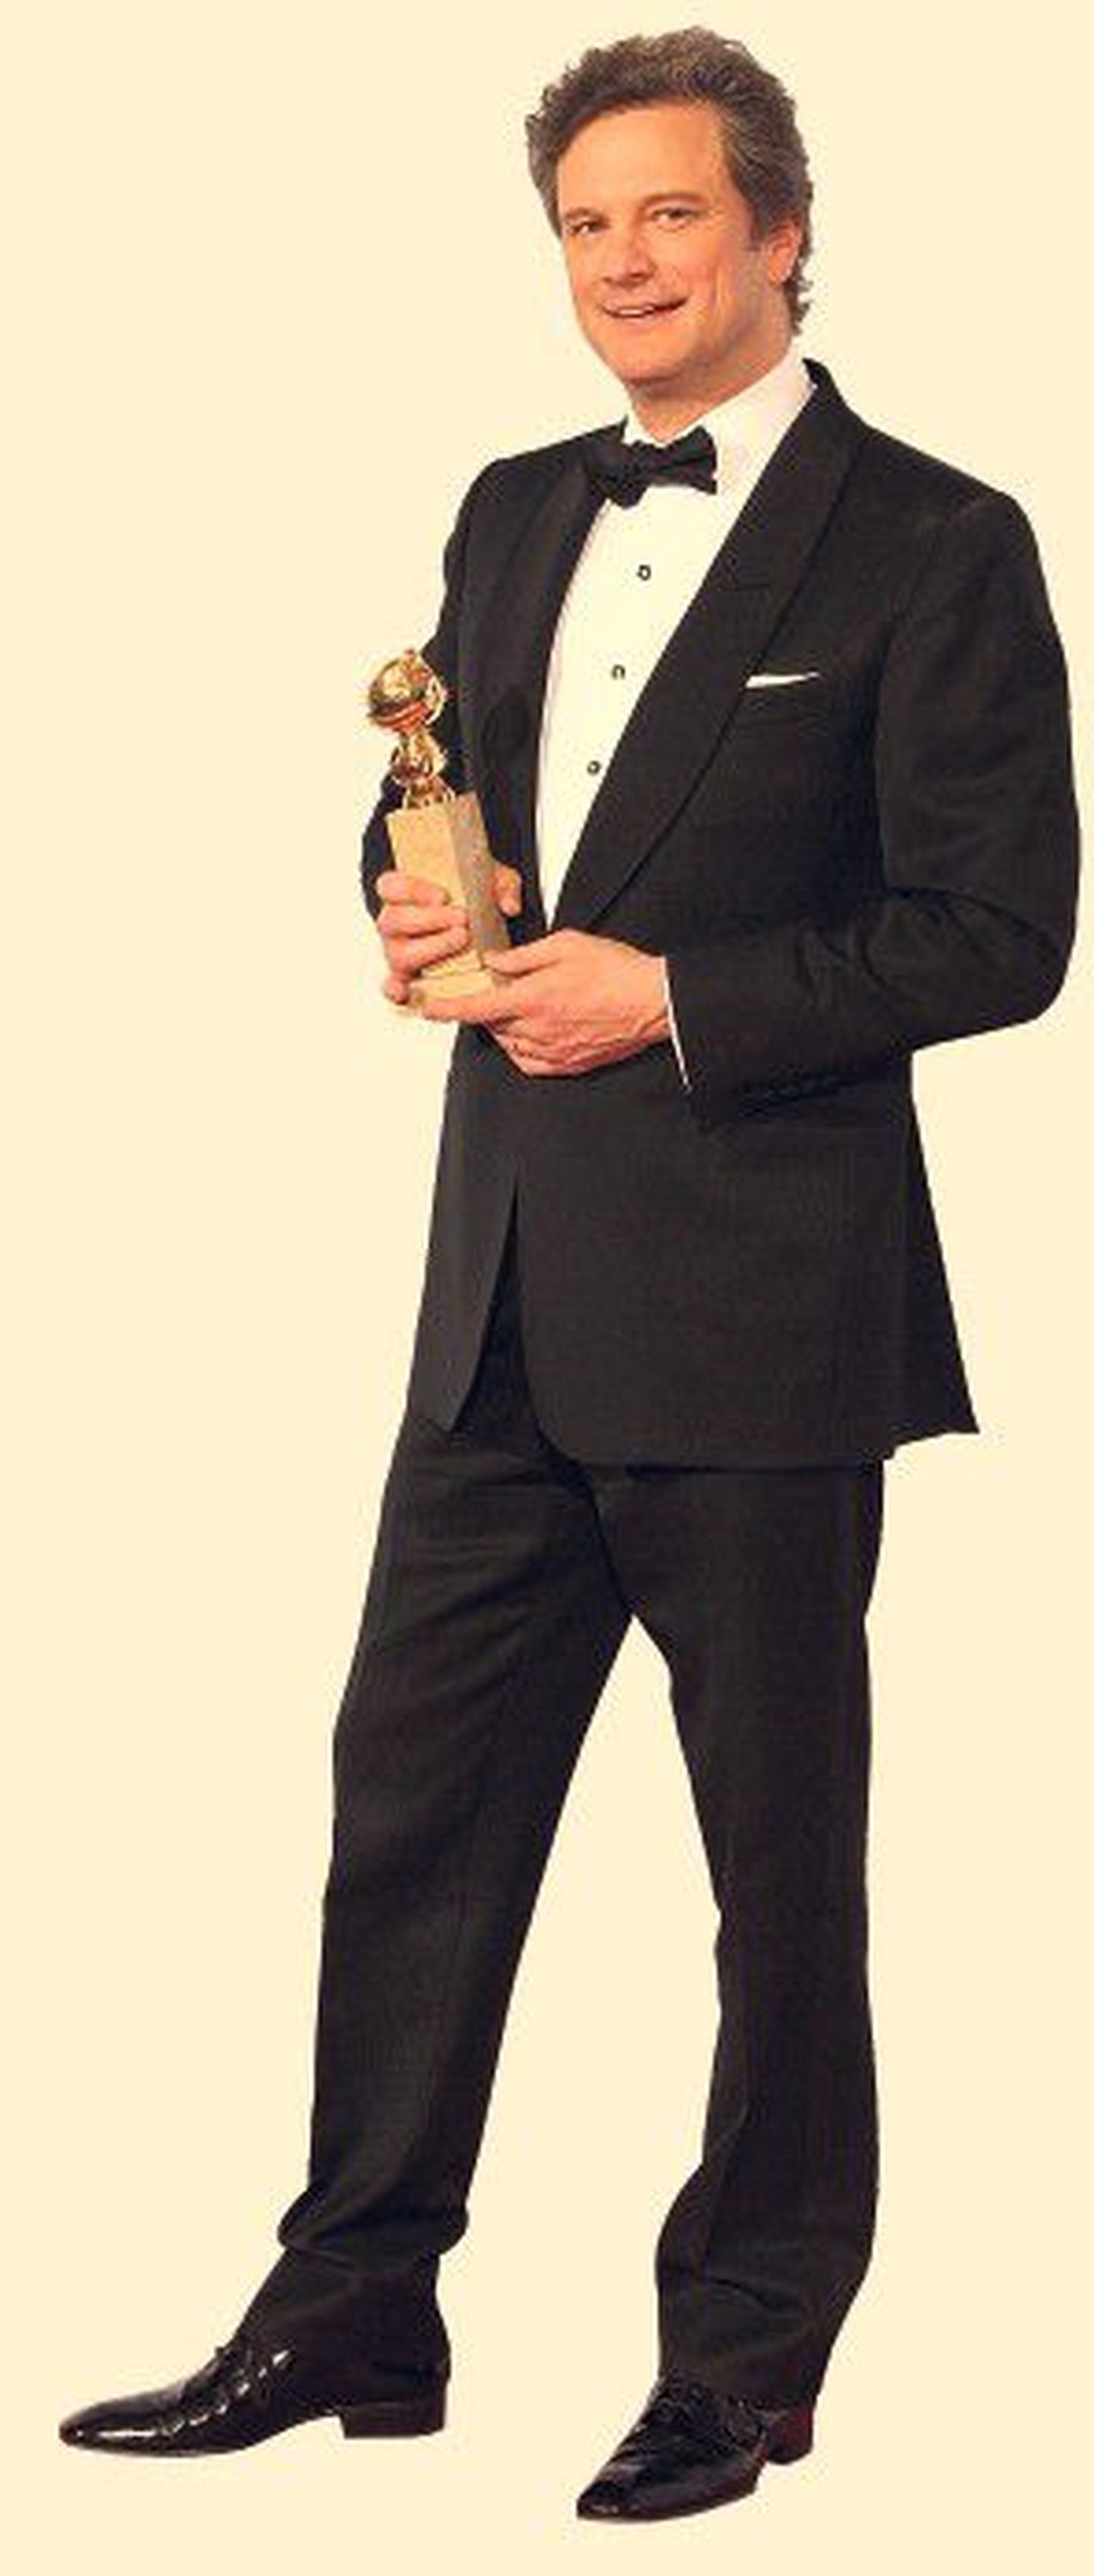 Sarm lööb jalust: maineka filmiauhinna Kuldgloobuse parima meesnäitleja tiitli võitnud Colin Firth poseerib ihaldatud kujuga.